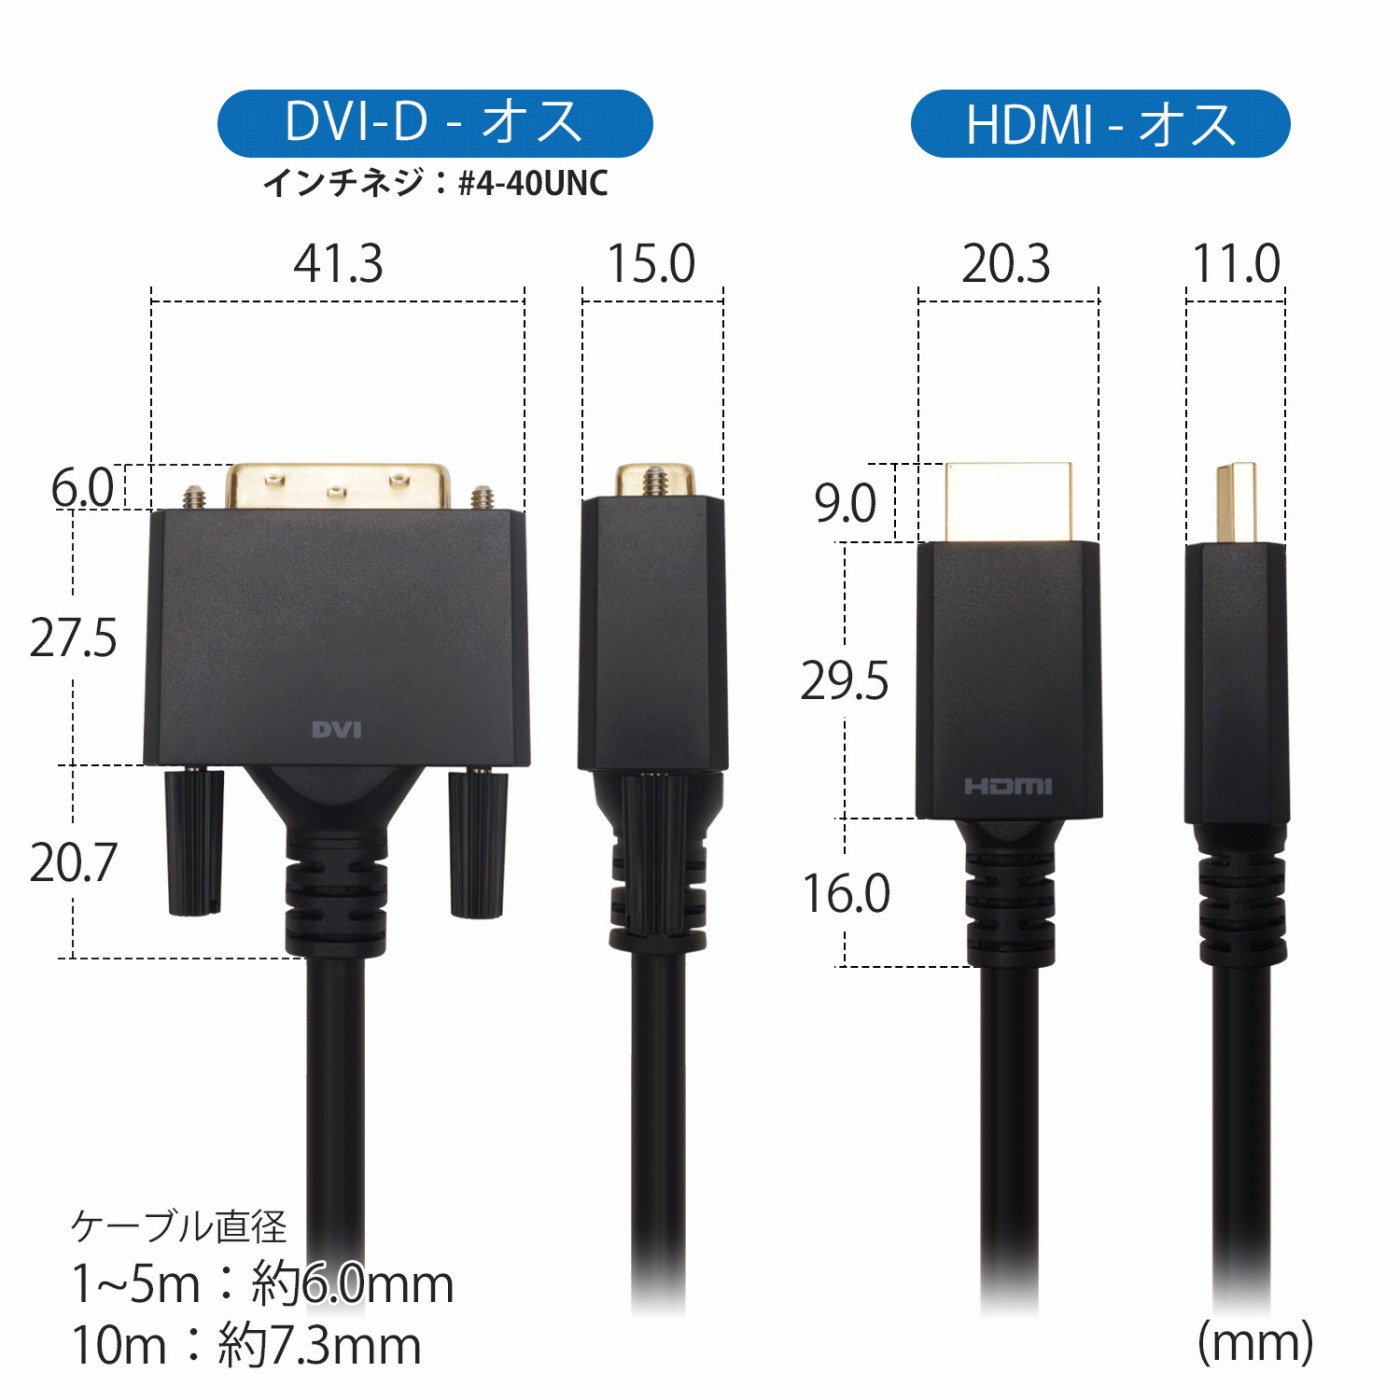 ☆送料無料☆ 当日発送可能 DVI-D ←→ HDMIケーブル 1.8m 変換名人DVHD-18GS 極細ケーブル 金メッキ端子 両端オス 